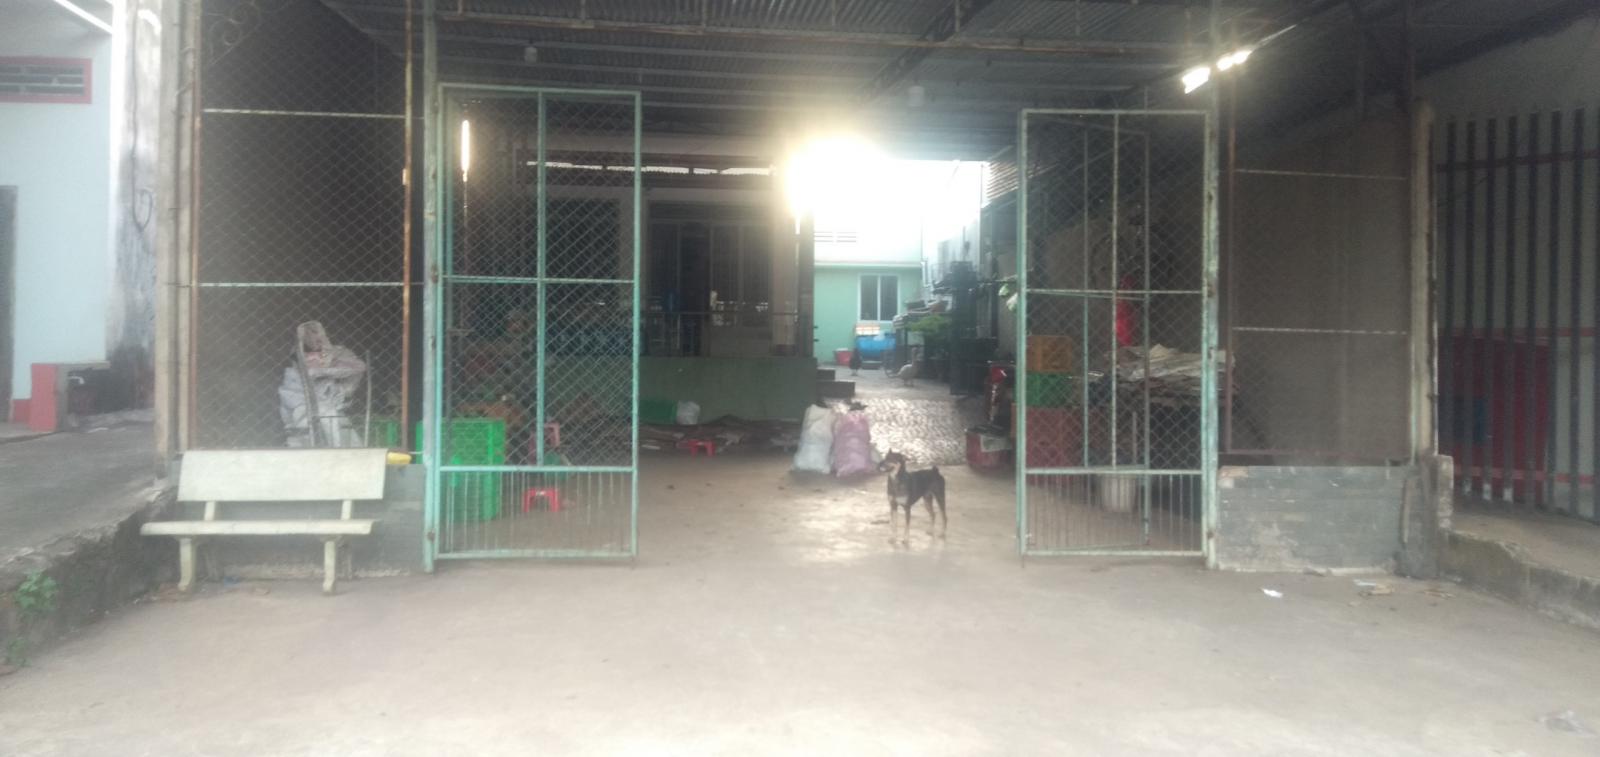 Chính chủ cần bán nhà đất tại xã Quang Trung, huyện Thống Nhất, tỉnh Đồng Nai.